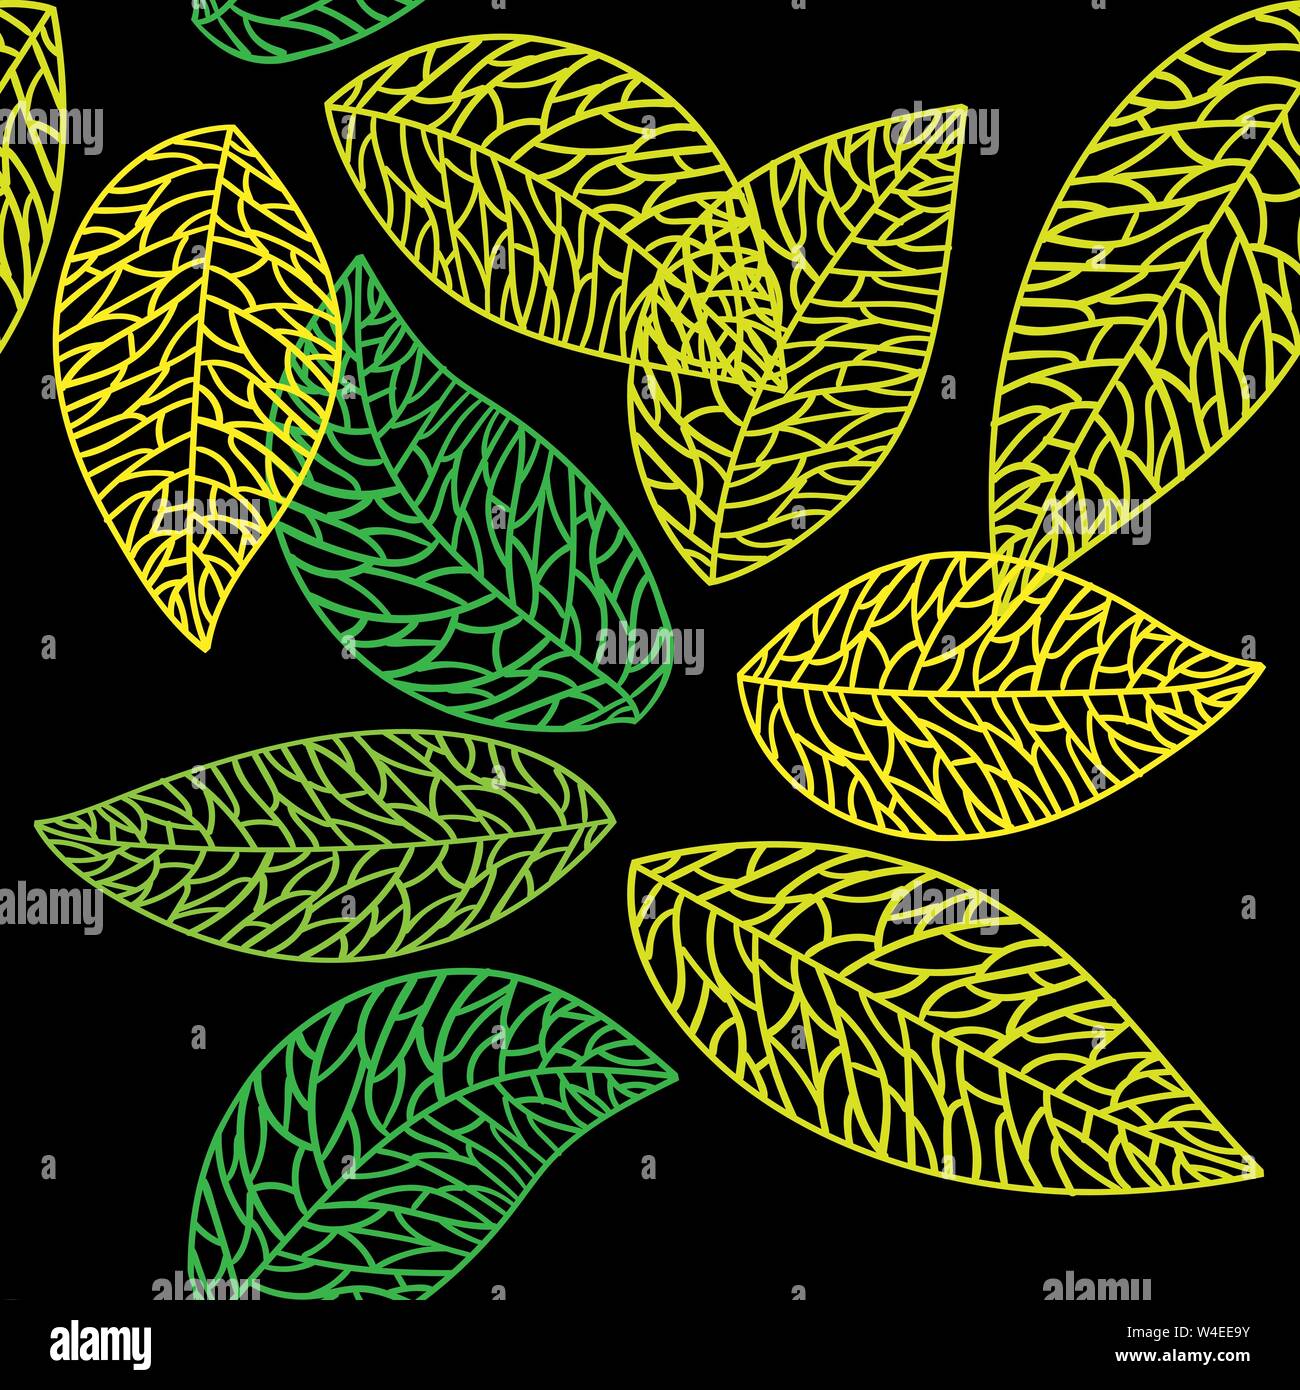 Cute vector leaf pattern transparente. Abstract imprimer avec des feuilles.  La belle nature élégante parure pour le tissu, l'emballage et du textile  Image Vectorielle Stock - Alamy